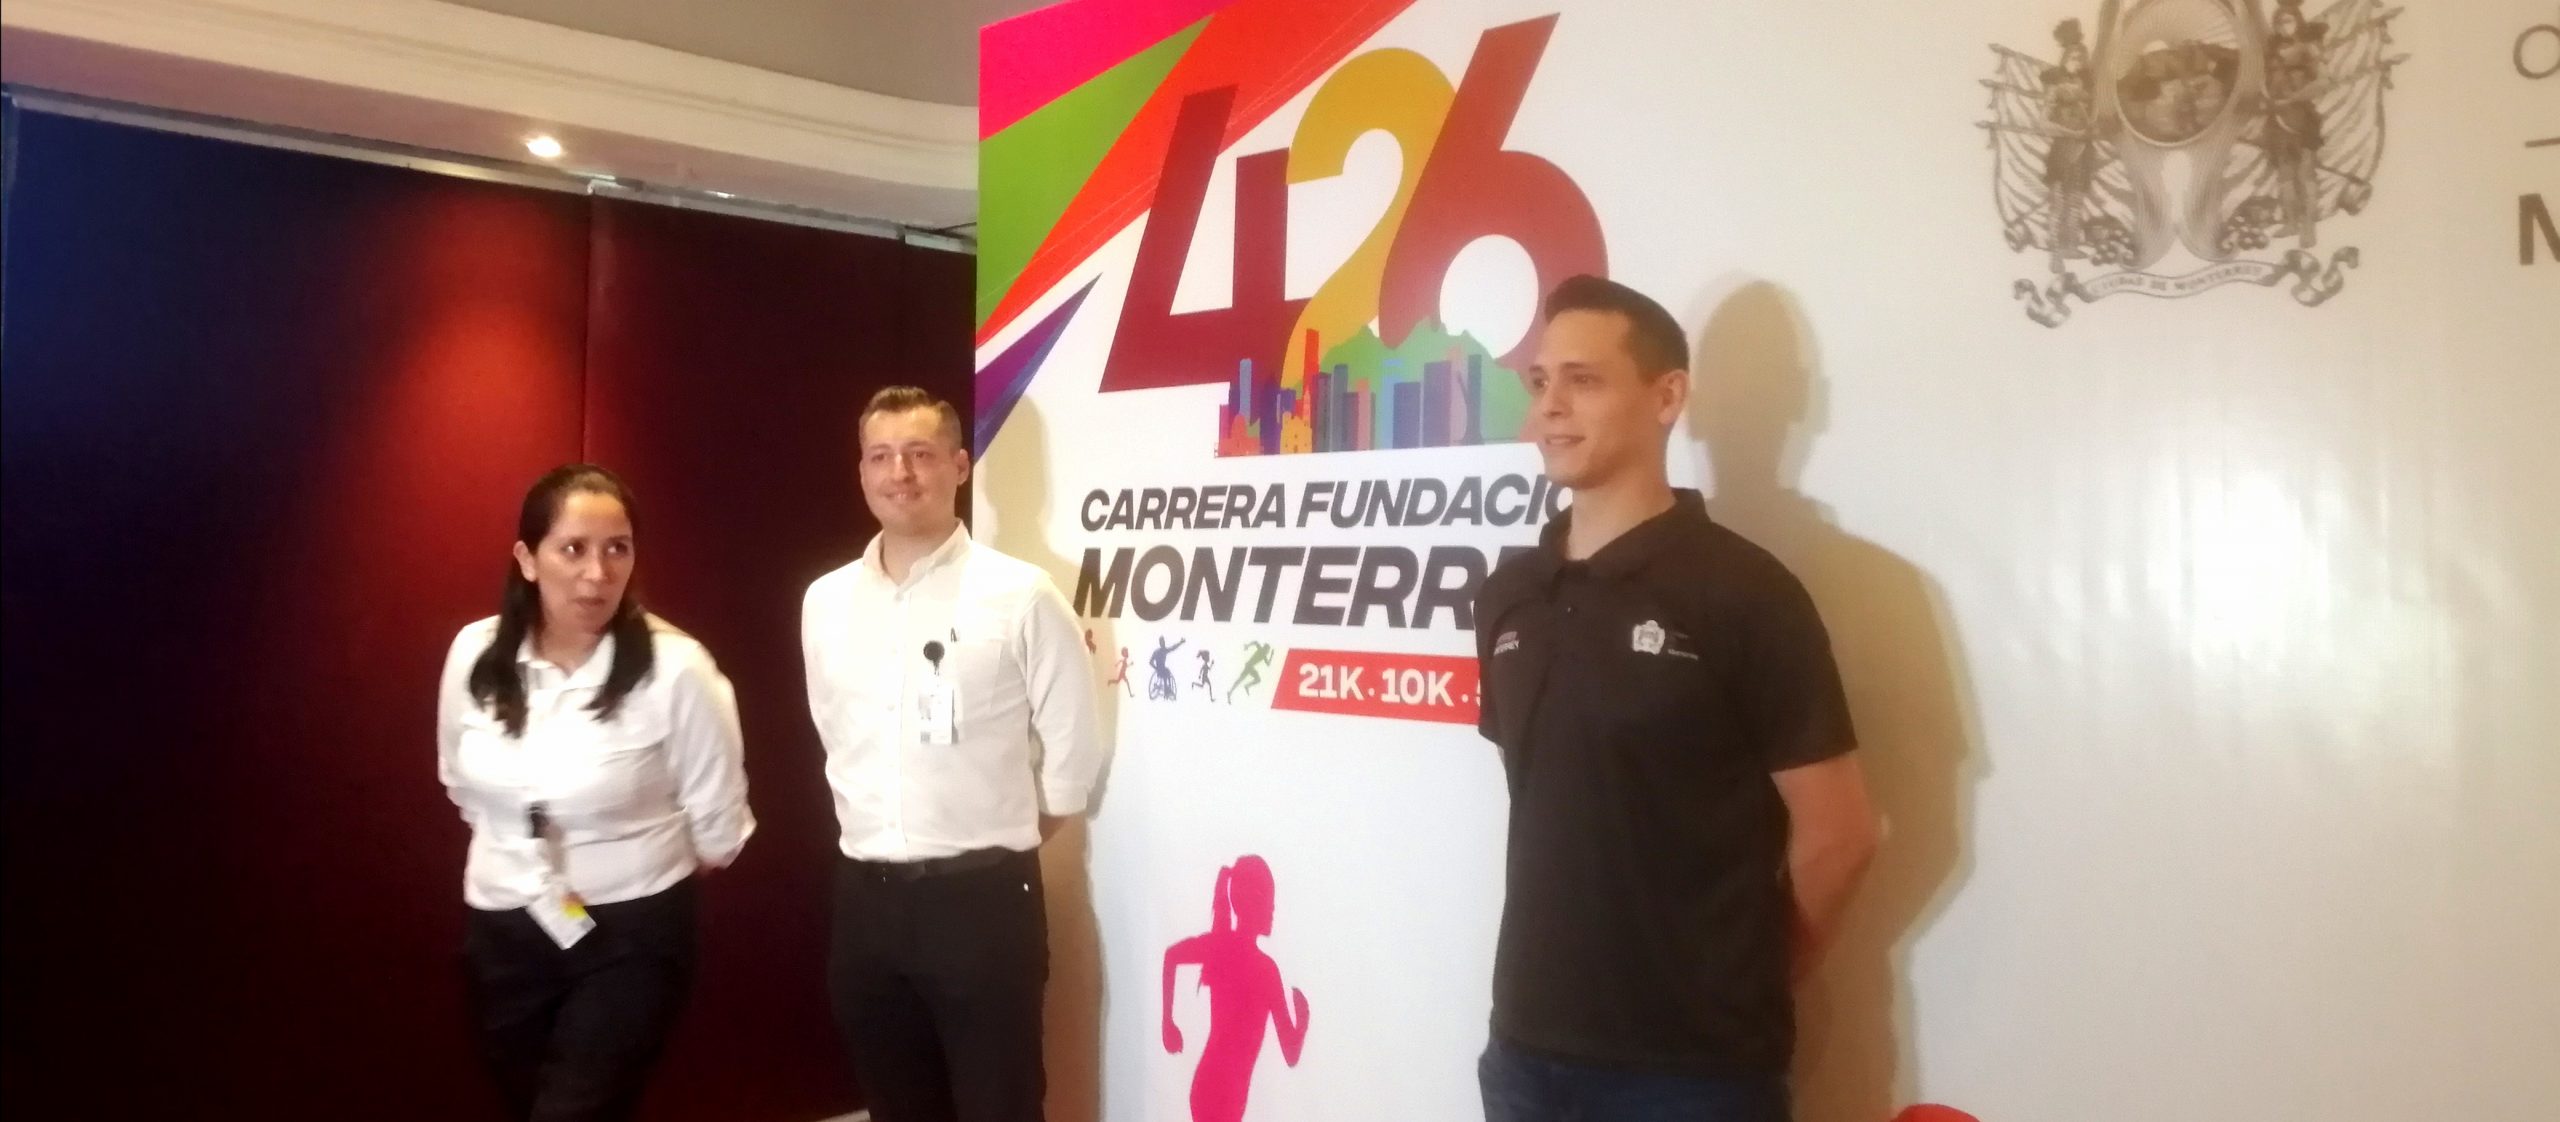 Celebrará Monterrey carrera por 426 años de su fundación